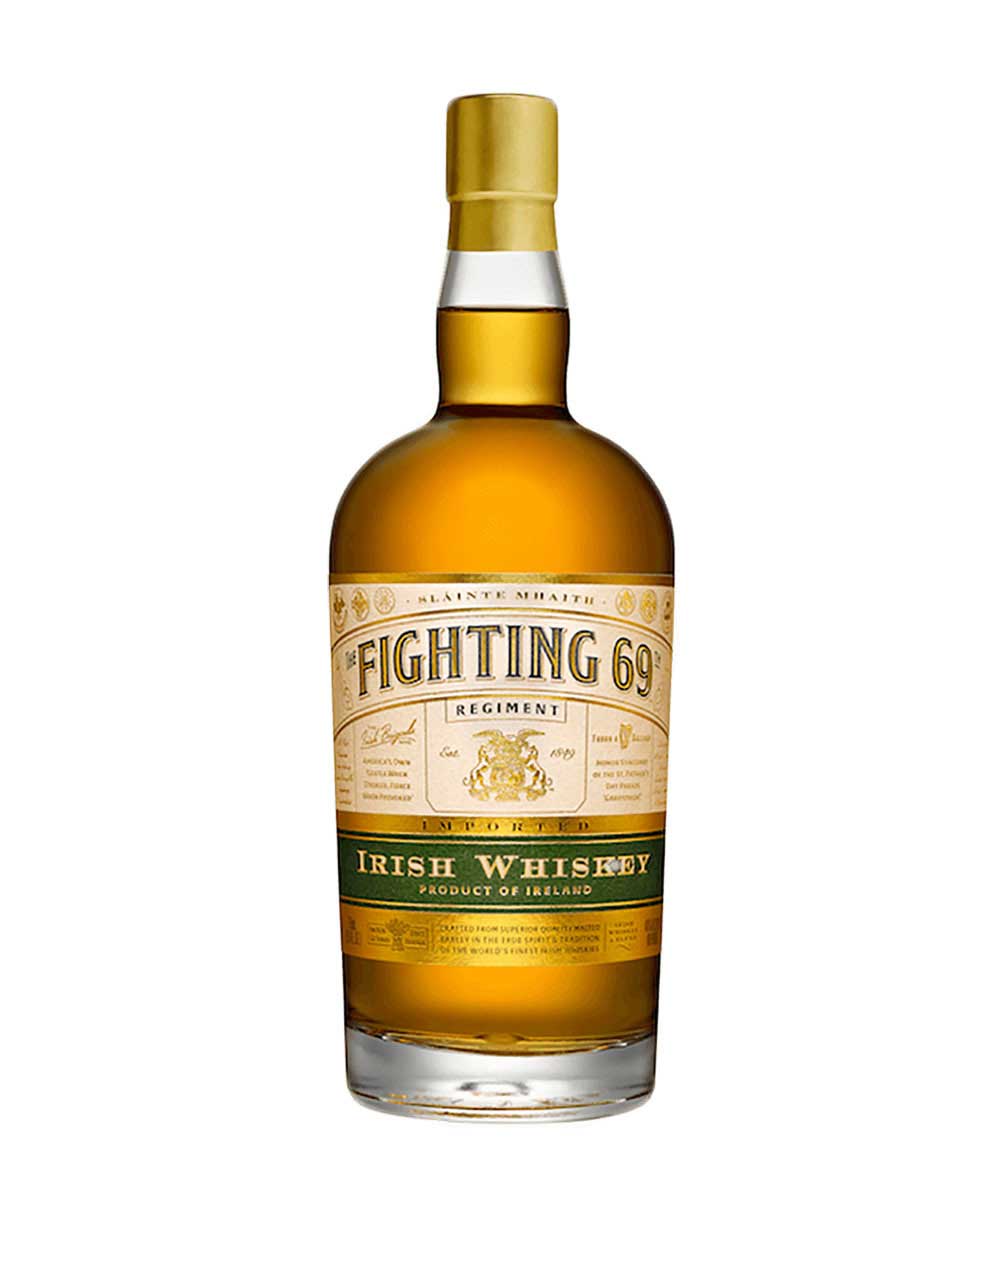 The Fighting 69 Irish Whisky